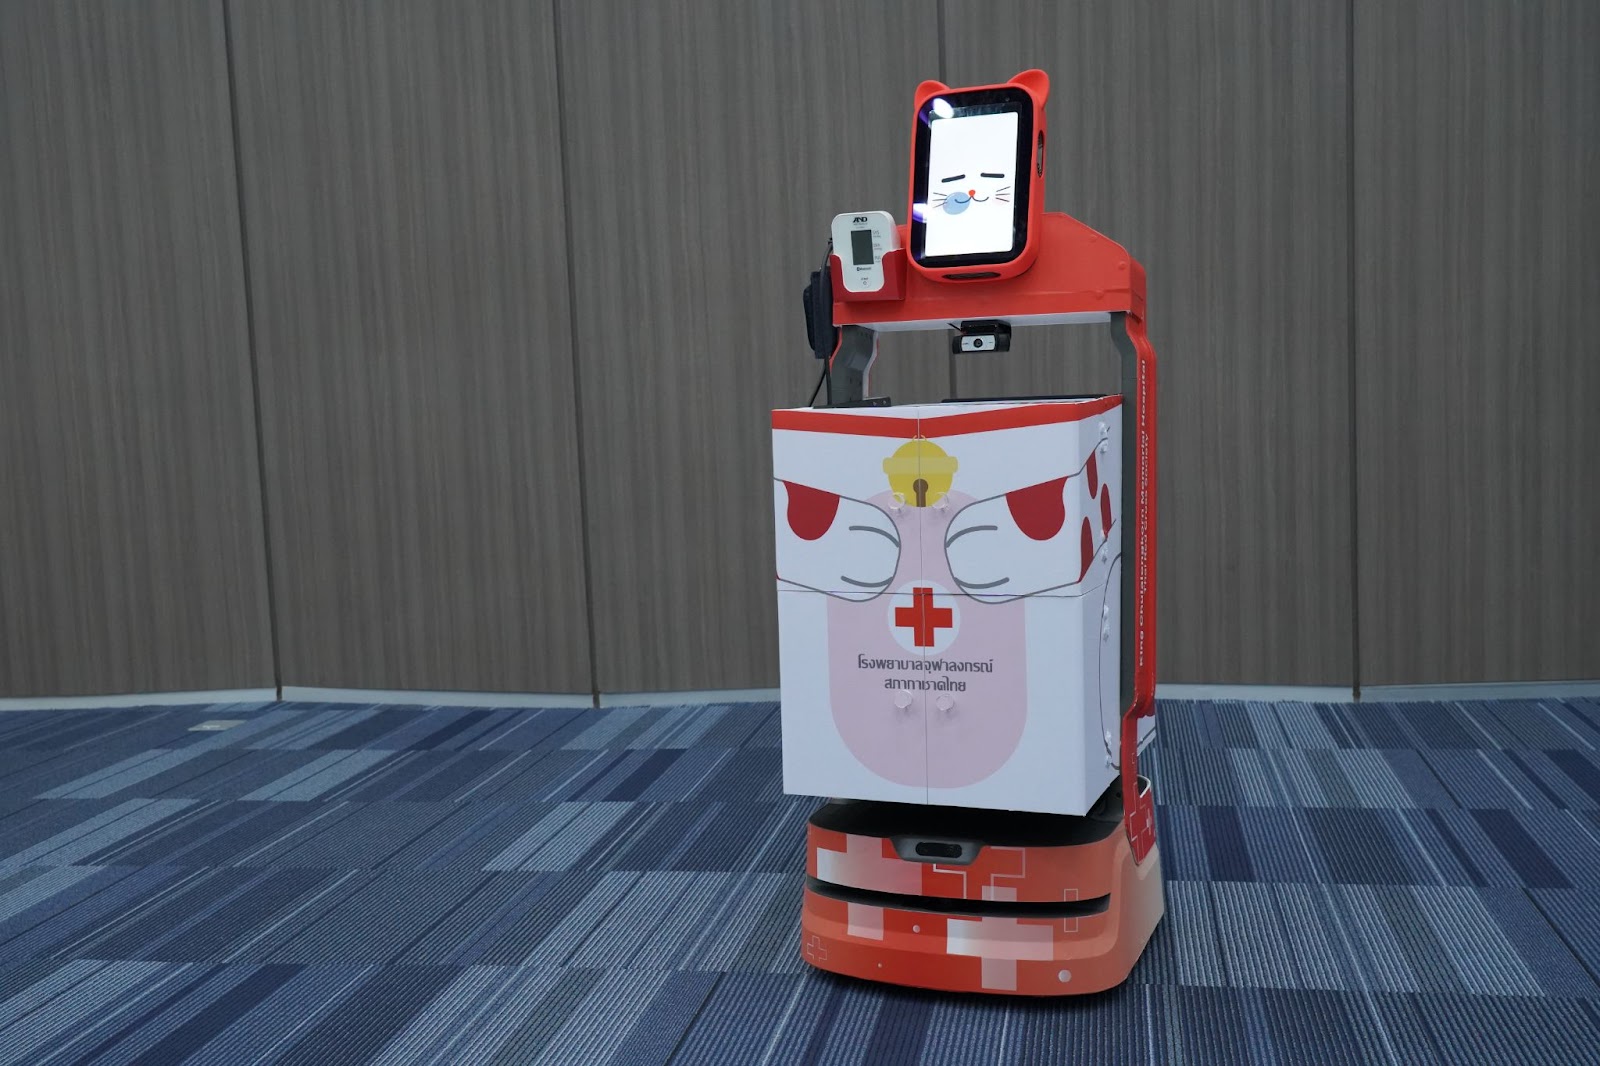 ครั้งแรกในไทย! ทรู ดิจิทัล ส่งนวัตกรรมหุ่นยนต์ช่วยแพทย์ รพ.จุฬาลงกรณ์ฯ ให้บริการรักษามะเร็งต่อมไทรอยด์ด้วยสารรังสีไอโอดีน